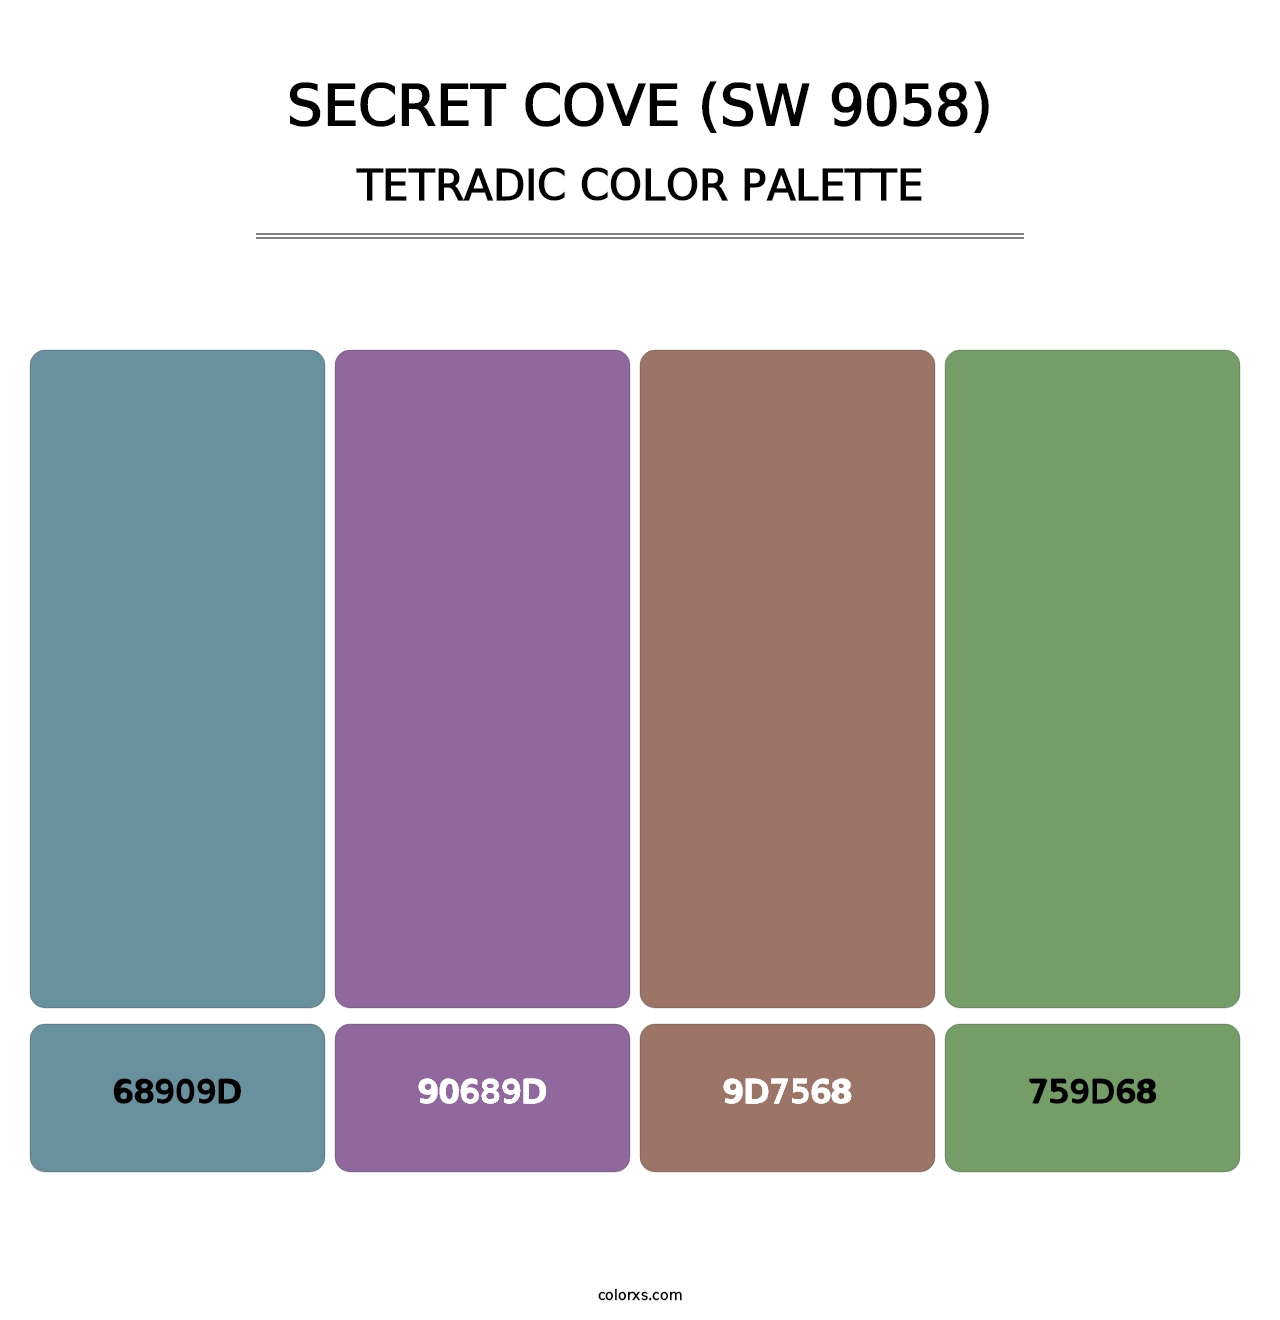 Secret Cove (SW 9058) - Tetradic Color Palette